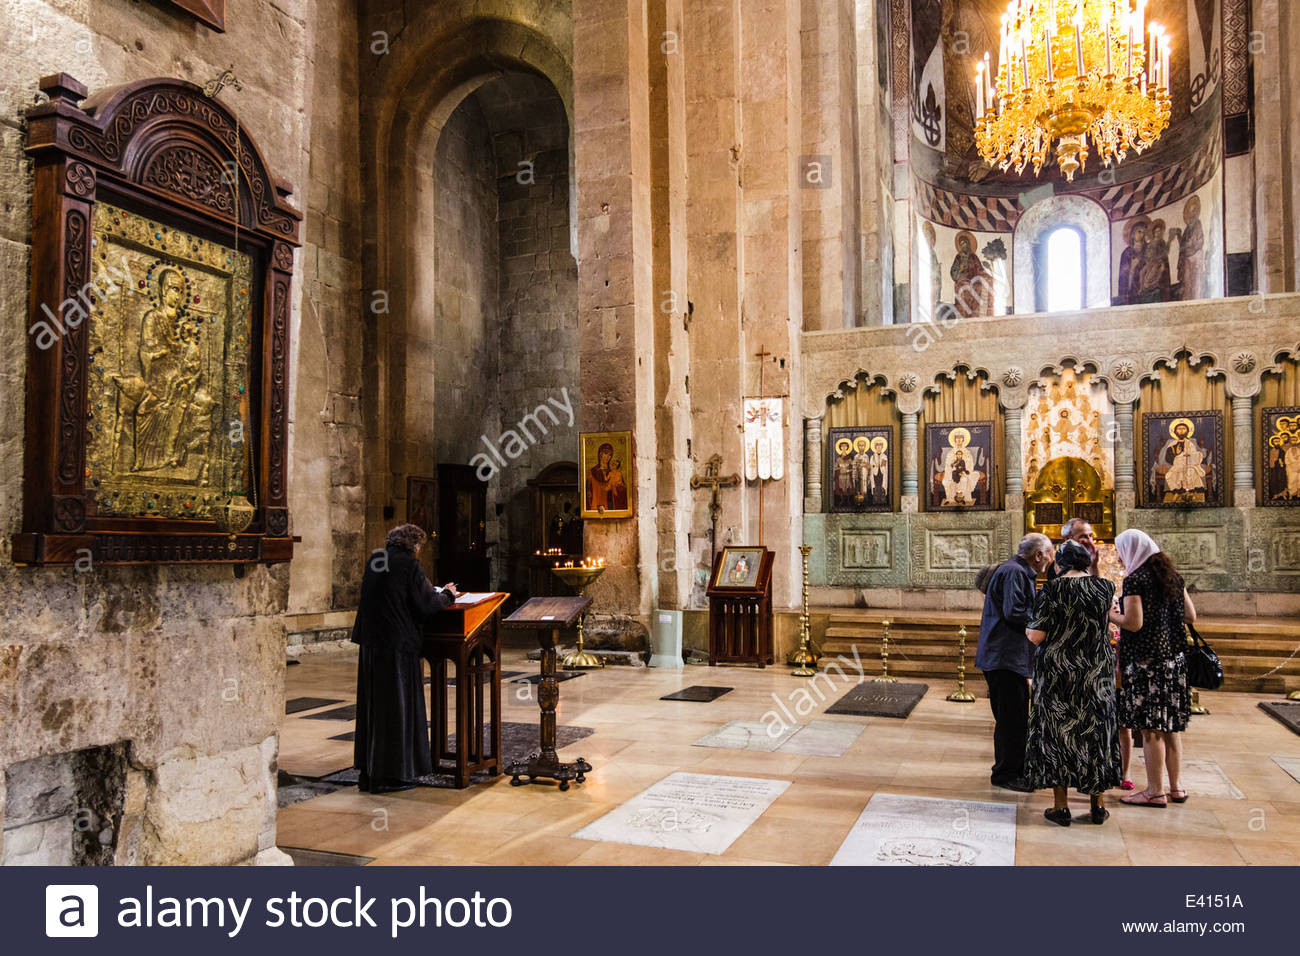 inside-svetitskhoveli-cathedral-mtskheta-georgia-E4151A.jpg